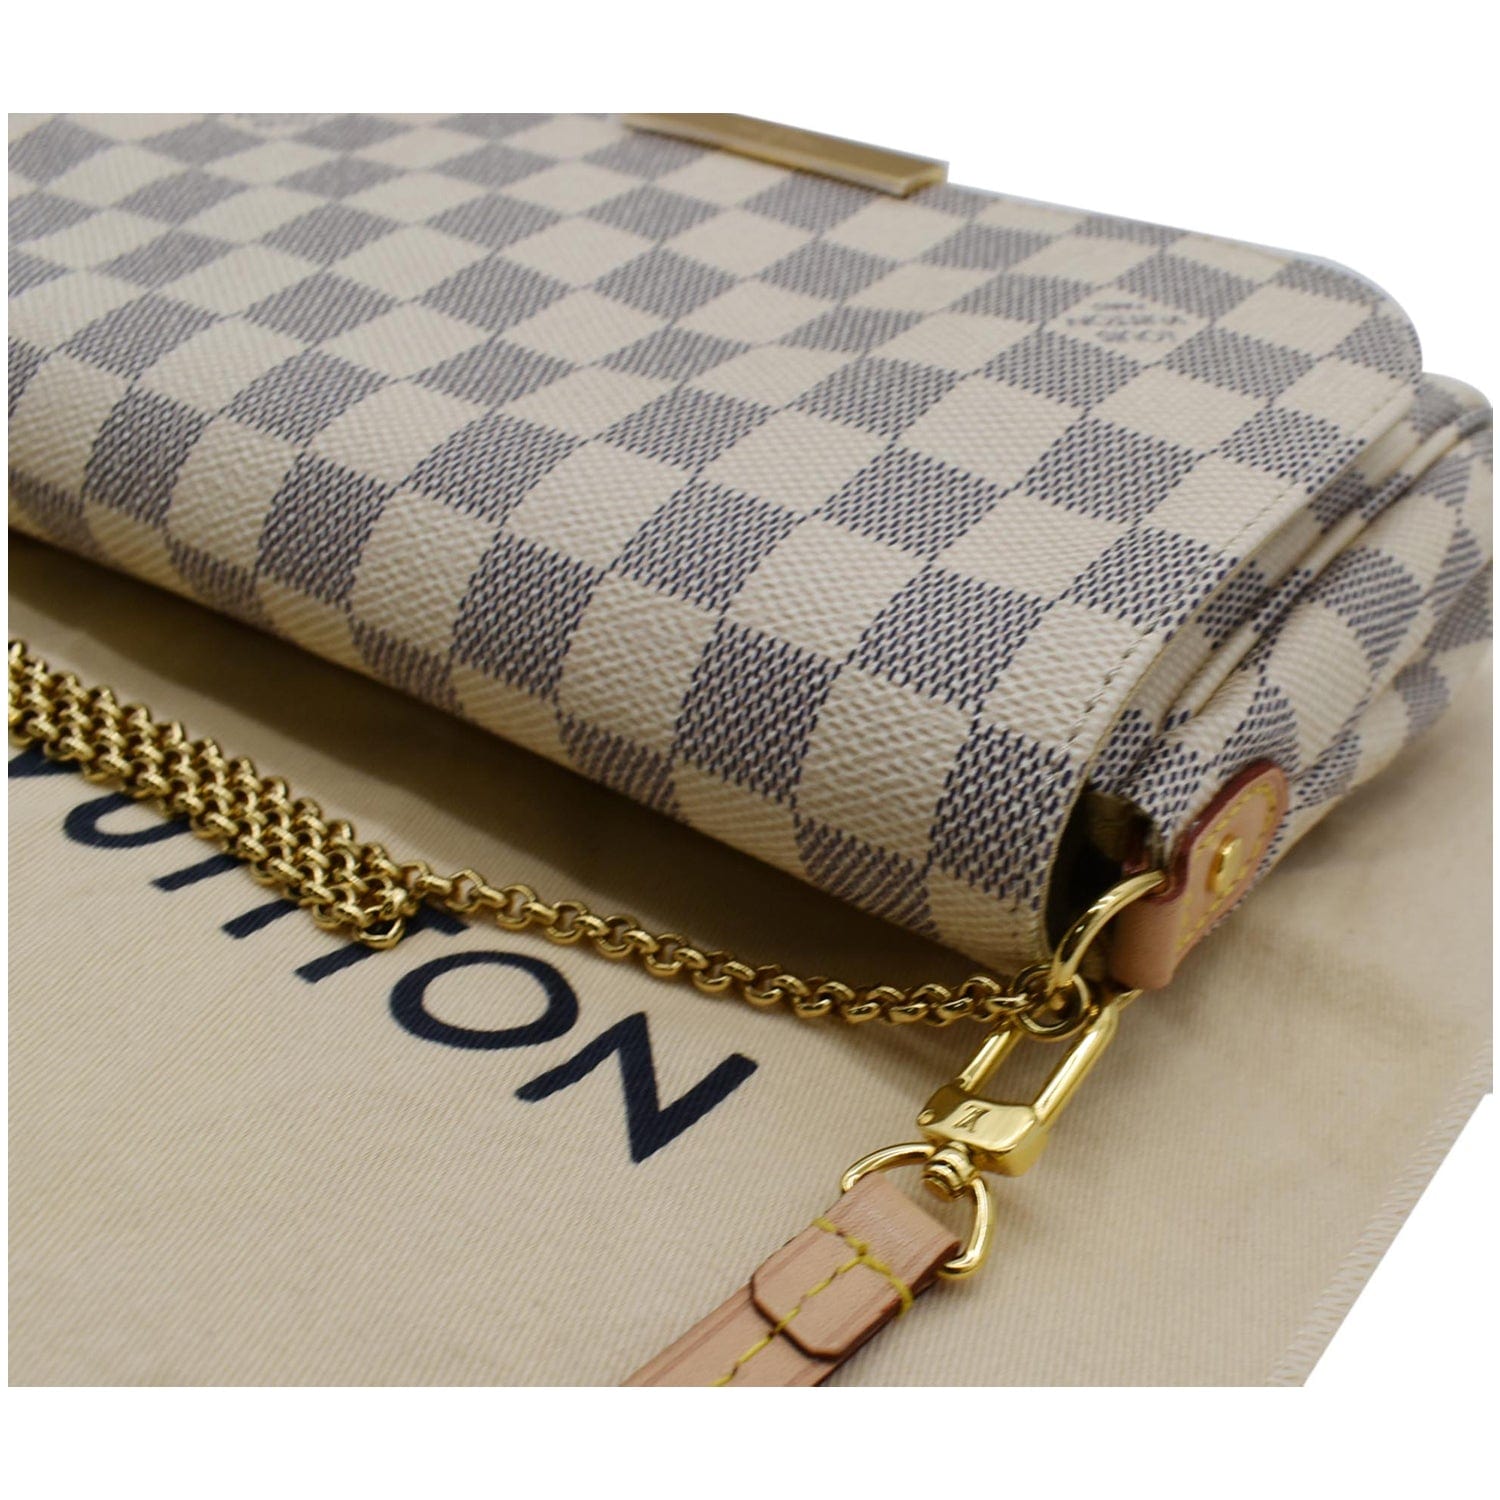 👜Dior x Louis Vuitton Handbag